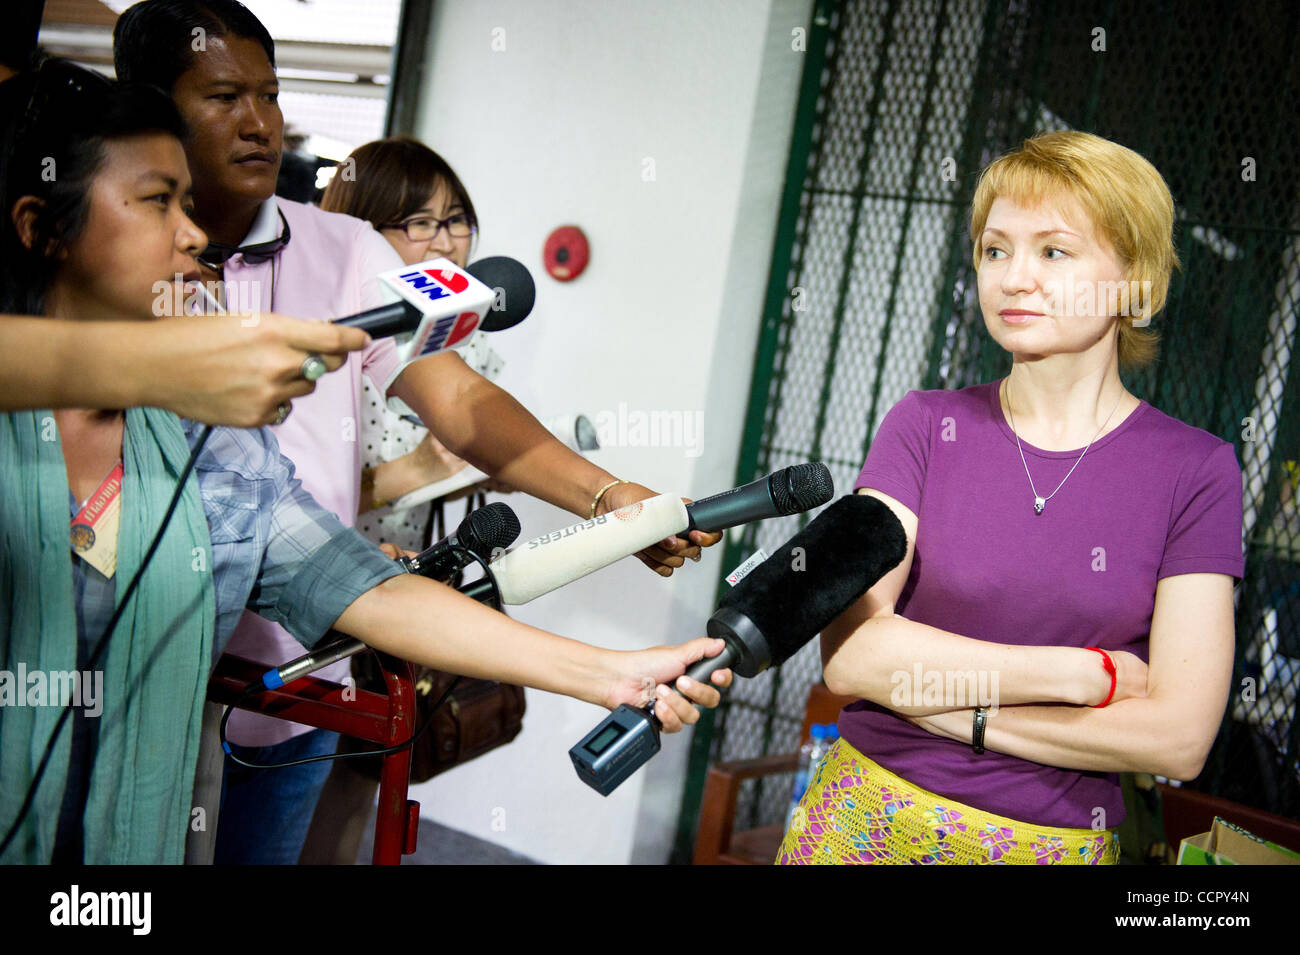 5 octobre 2010 - Bangkok, Thaïlande - journalistes interview ALLA BOUT (R),  épouse d'un marchand d'armes russe présumé Viktor Bout aussi connu comme  'Merchant de la mort", à la cour pénale Ratchada